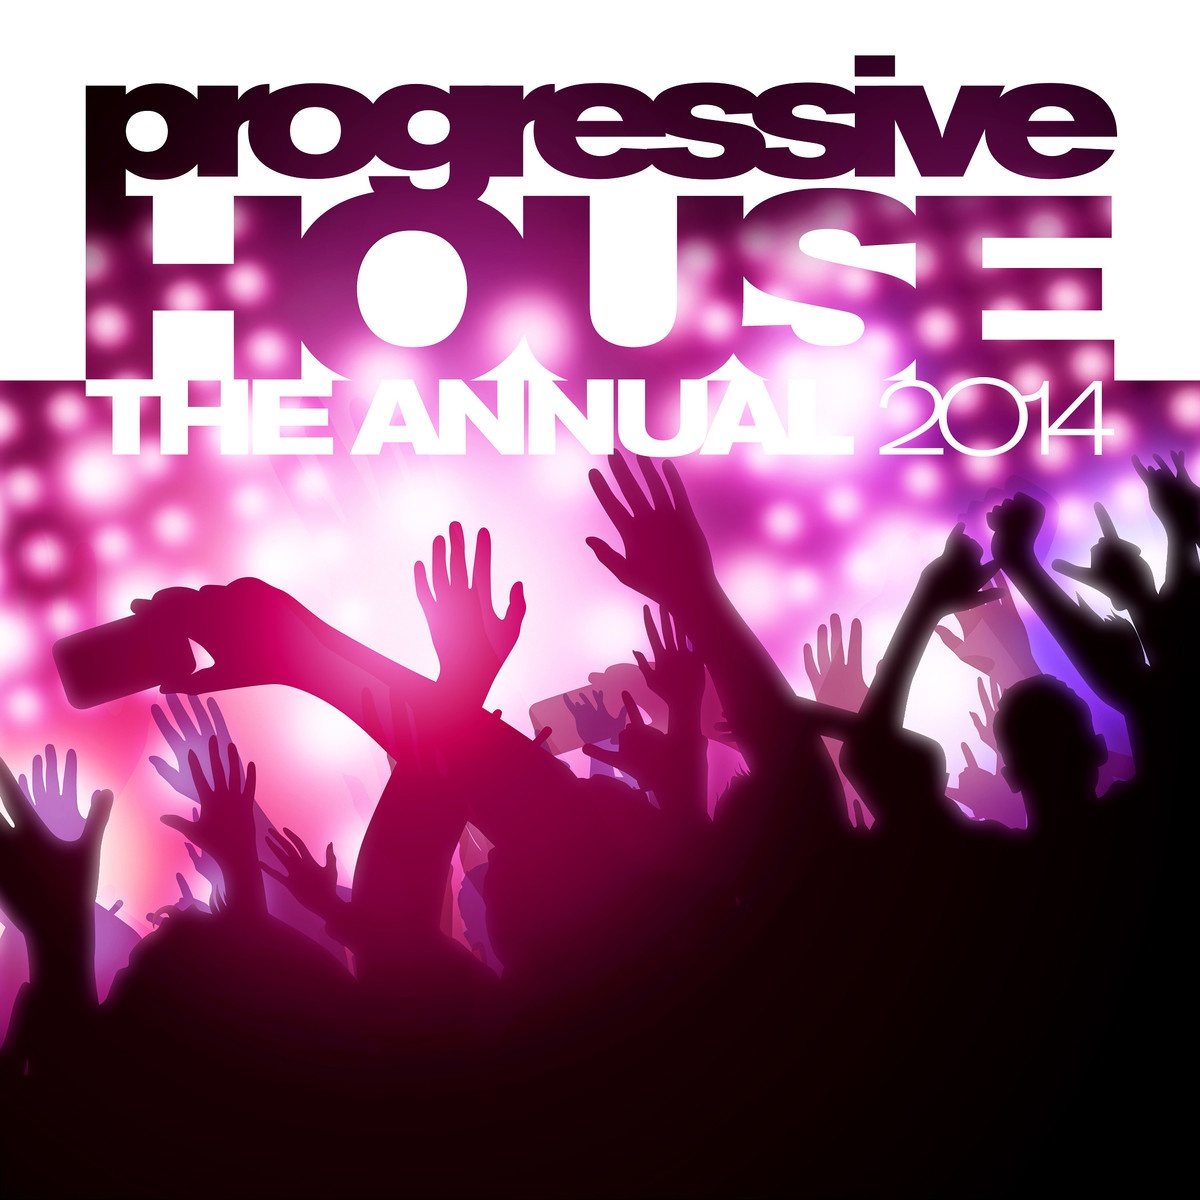 Progressive House The Annual 2014